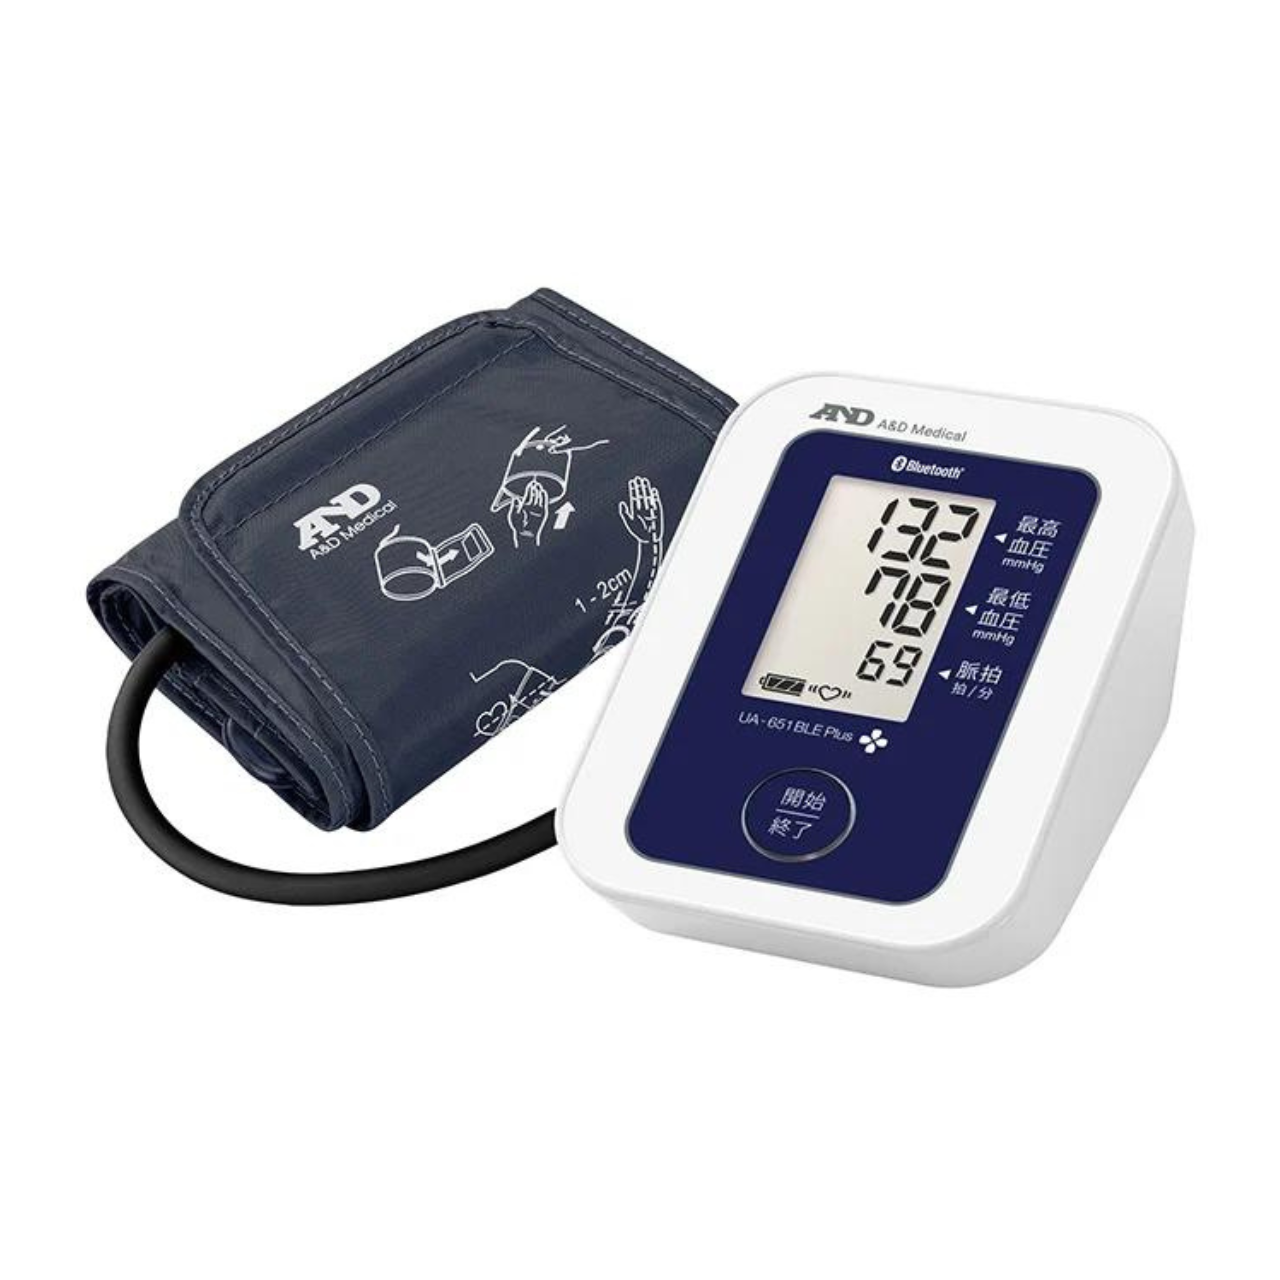 【カフェテリアプラン対象】Bluetooth®内蔵 血圧計 UA-651BLE Plus